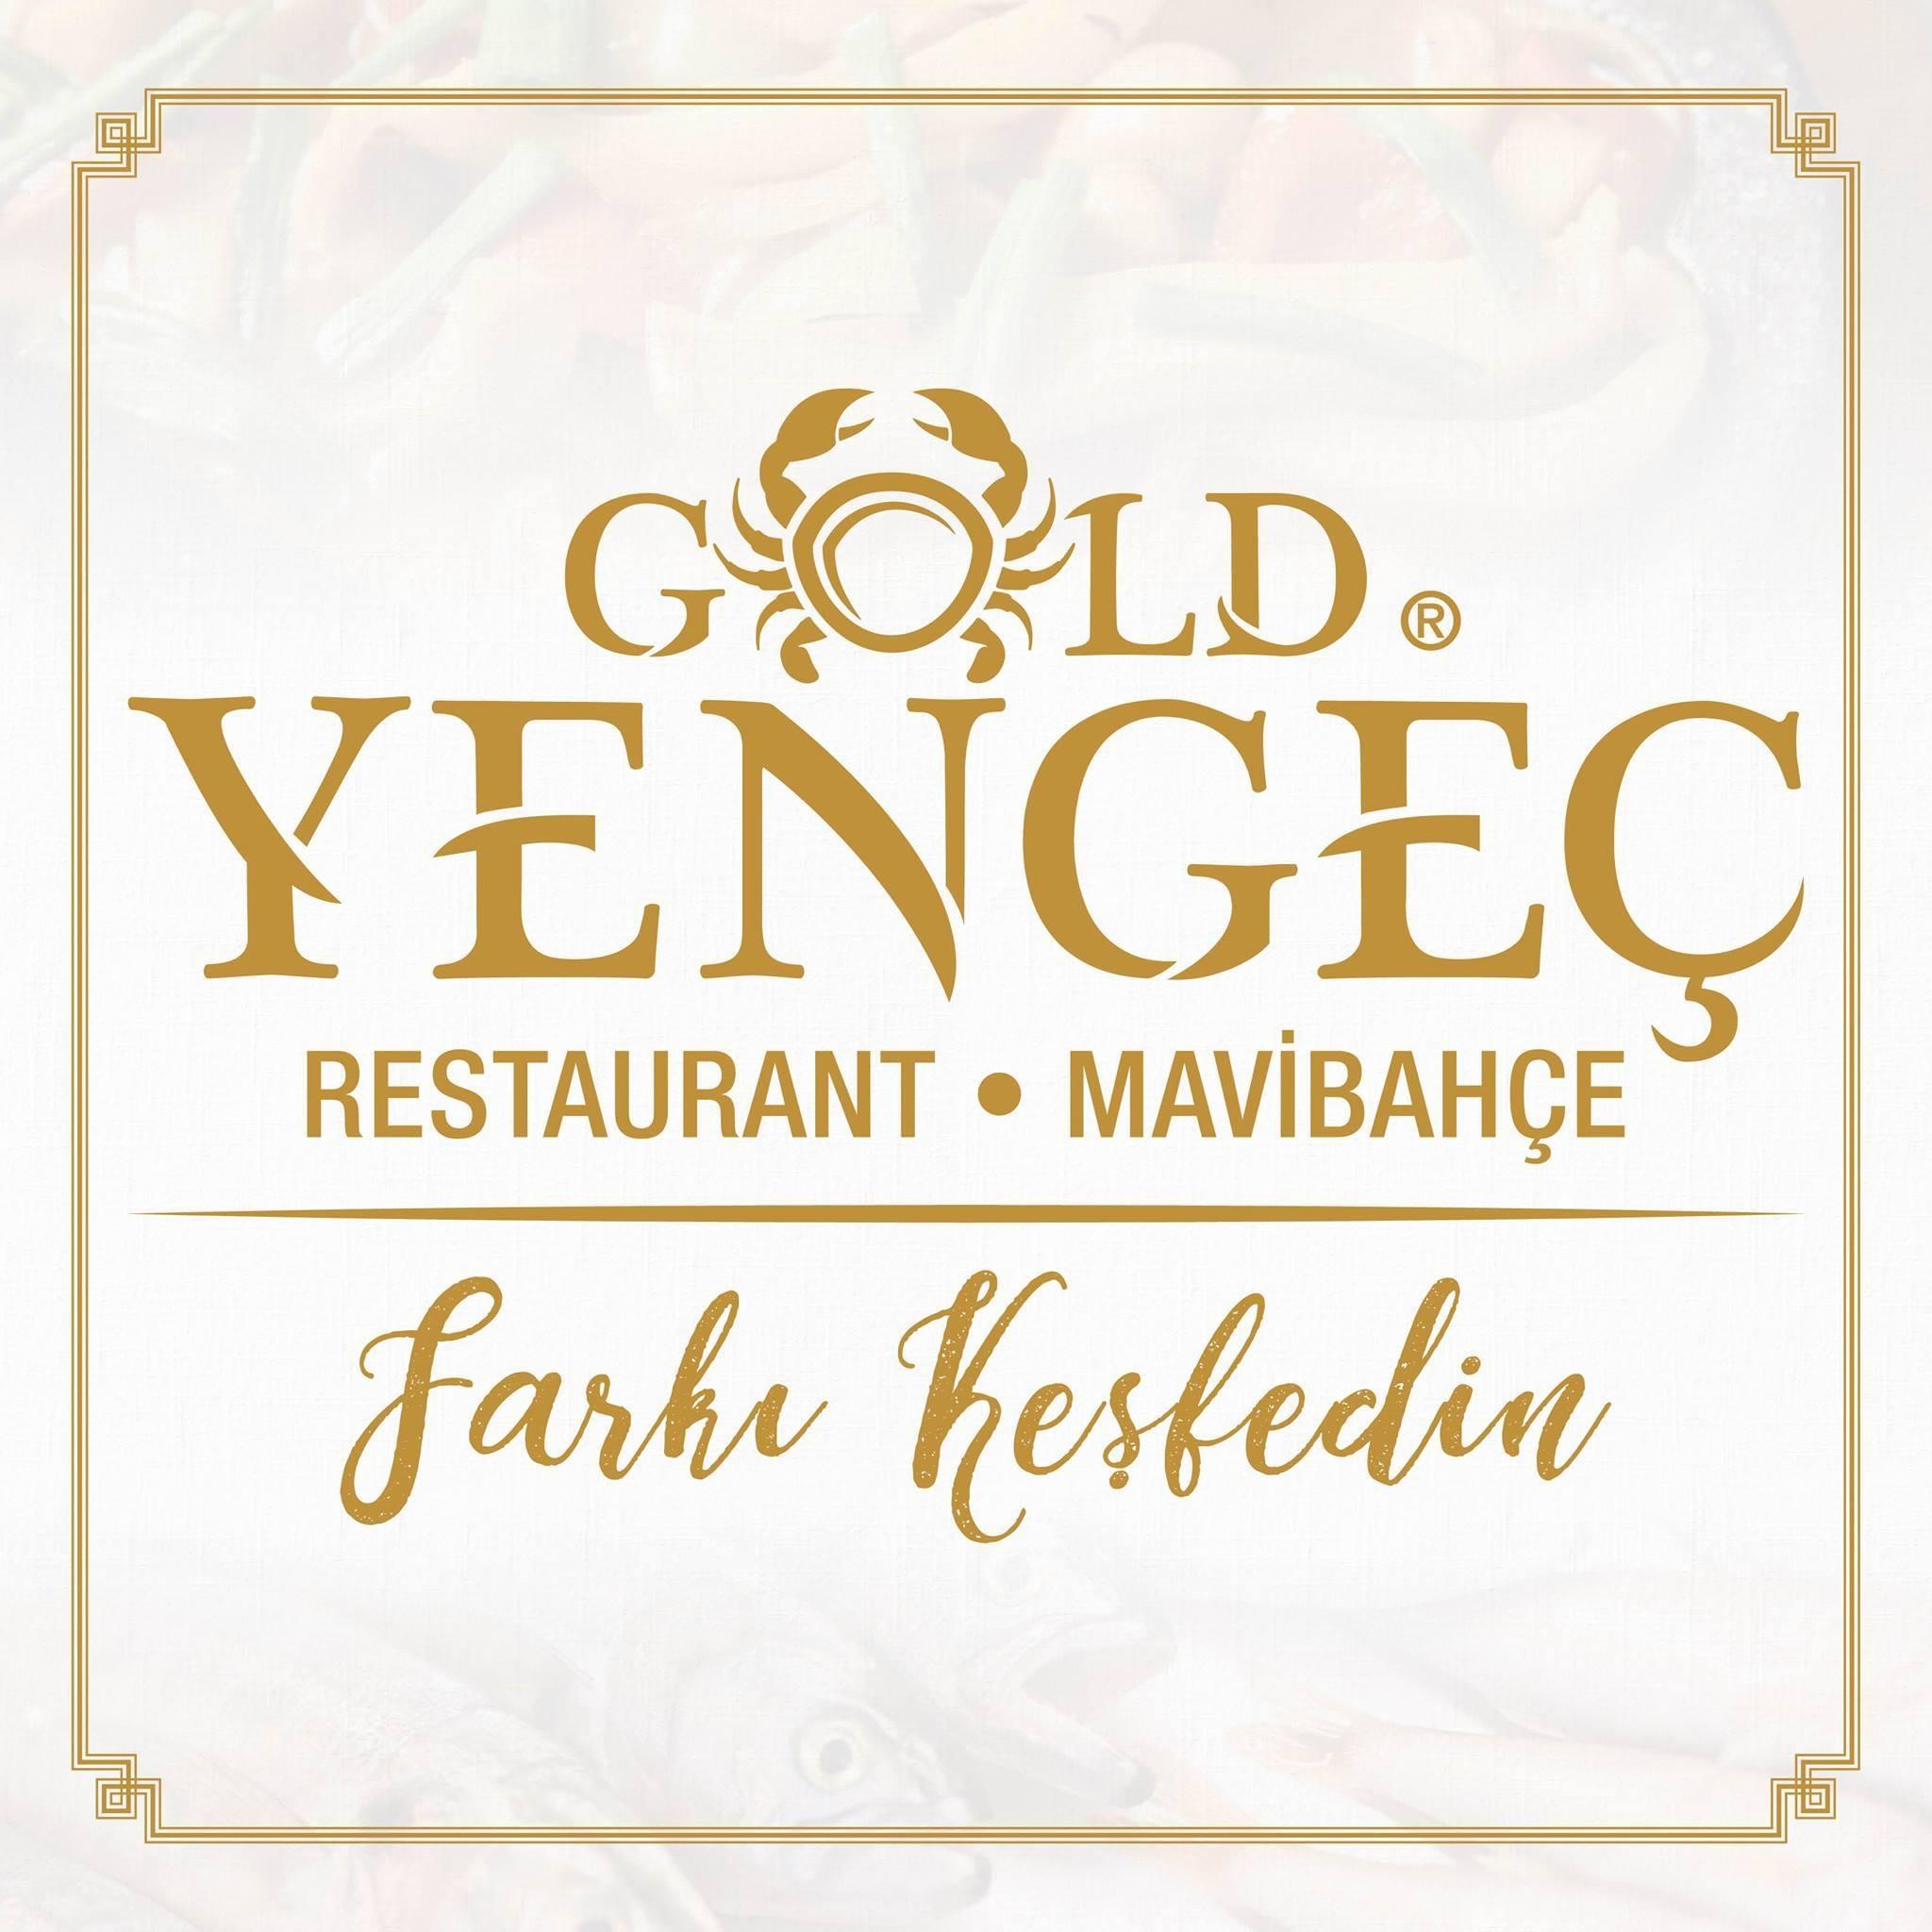 Gold Yengeç logo